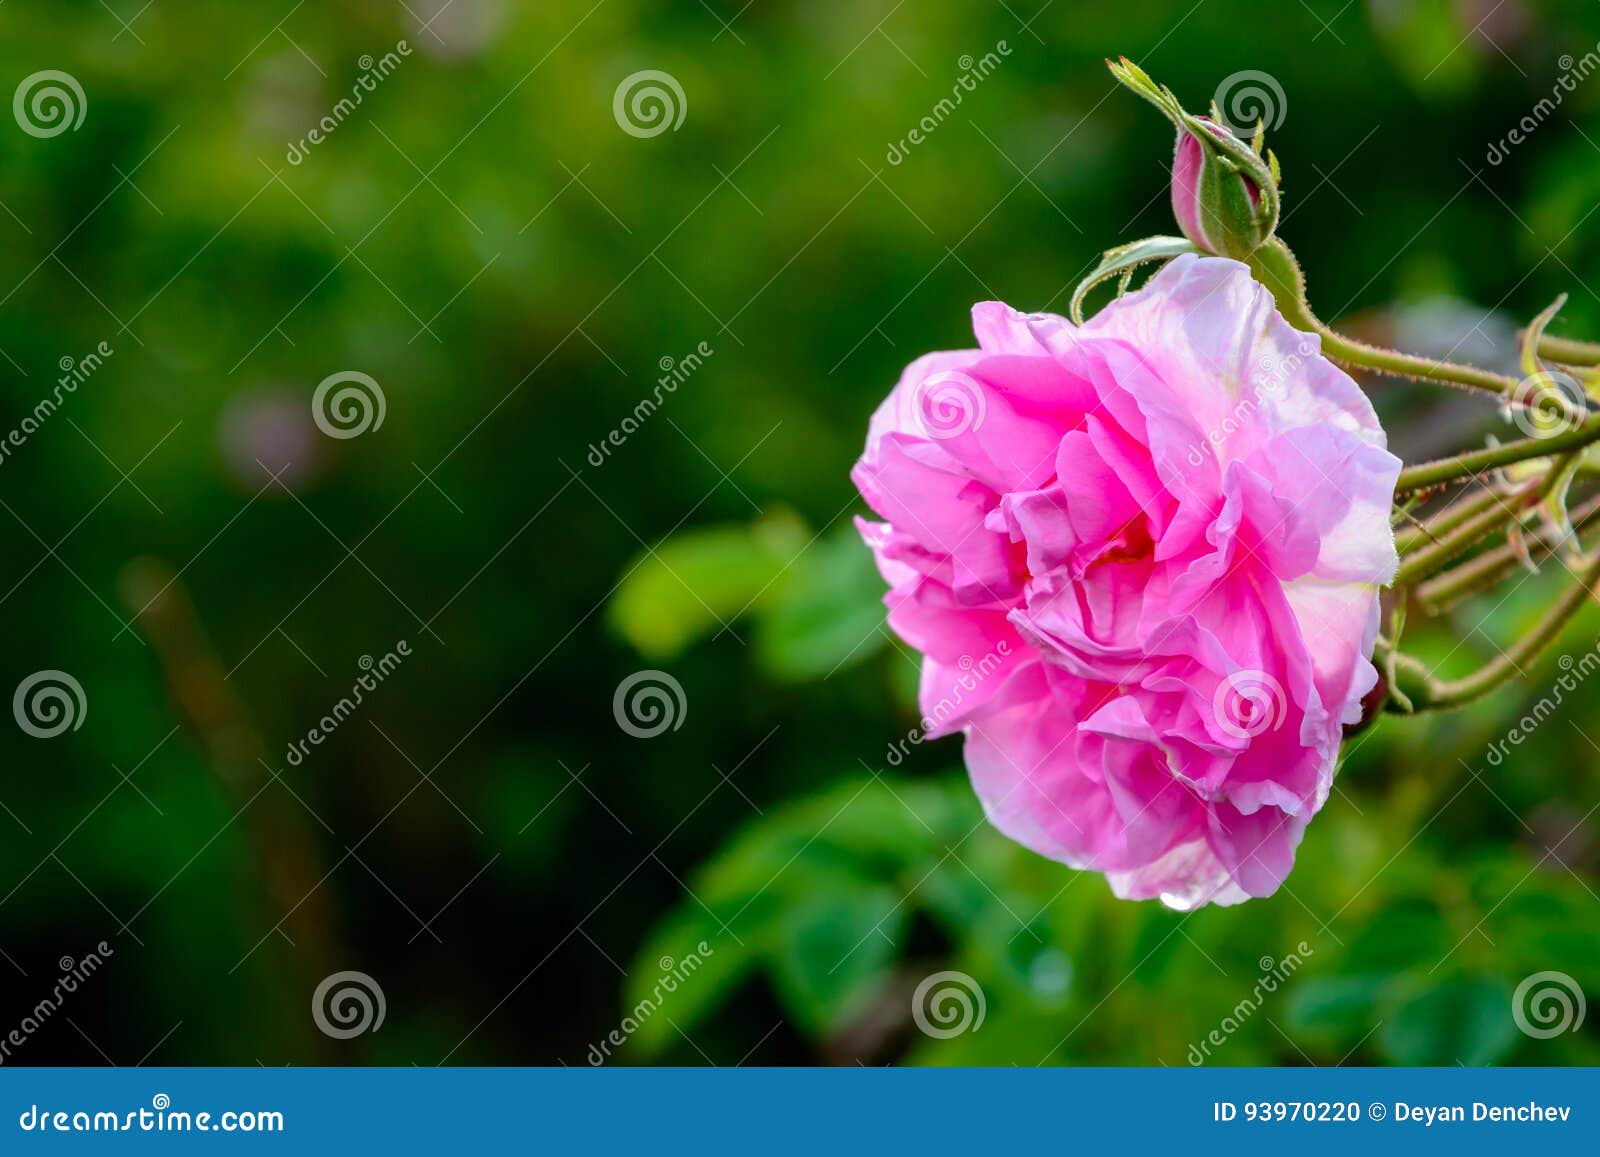 bulgarian rose field near karlovo